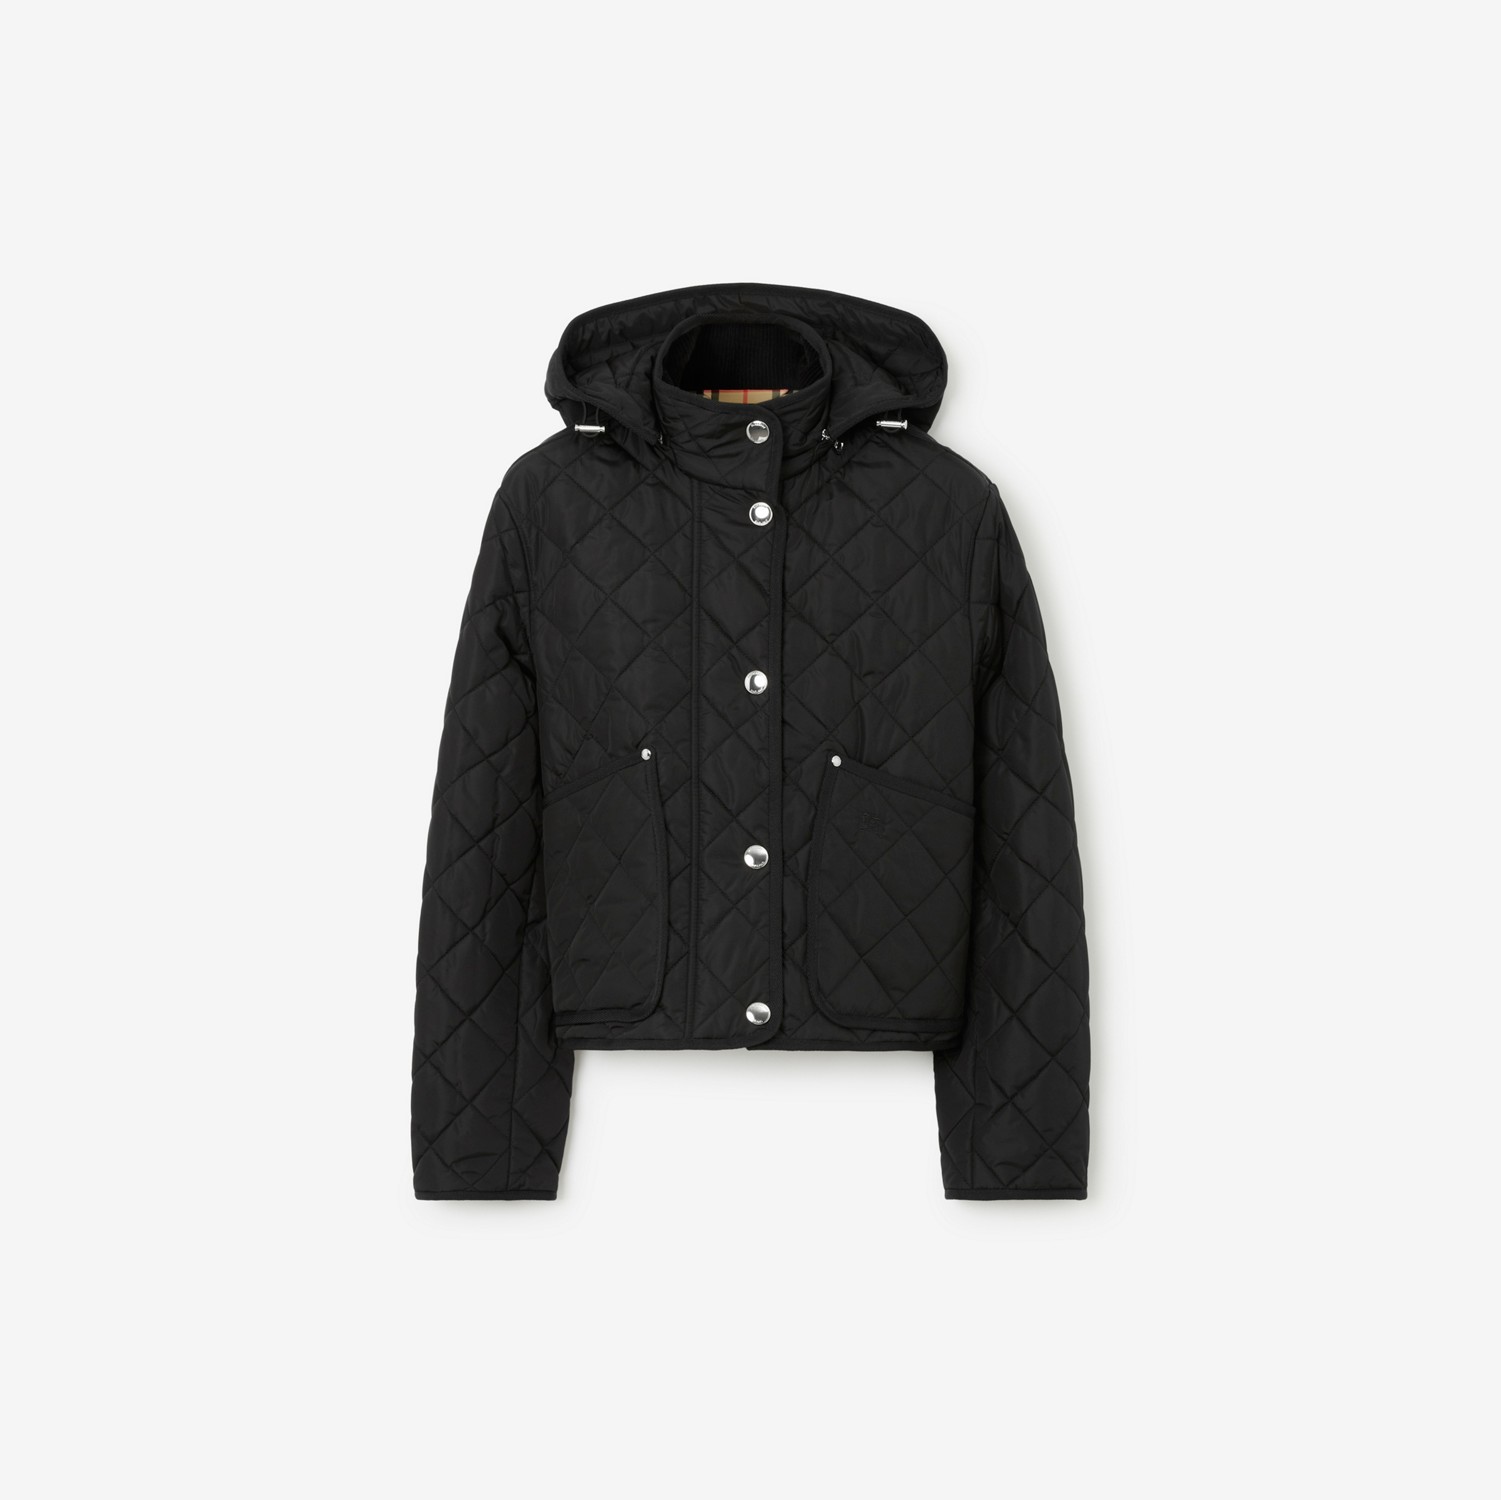 Cropped-Jacke aus Nylon in Rautensteppung (Schwarz) - Damen | Burberry®